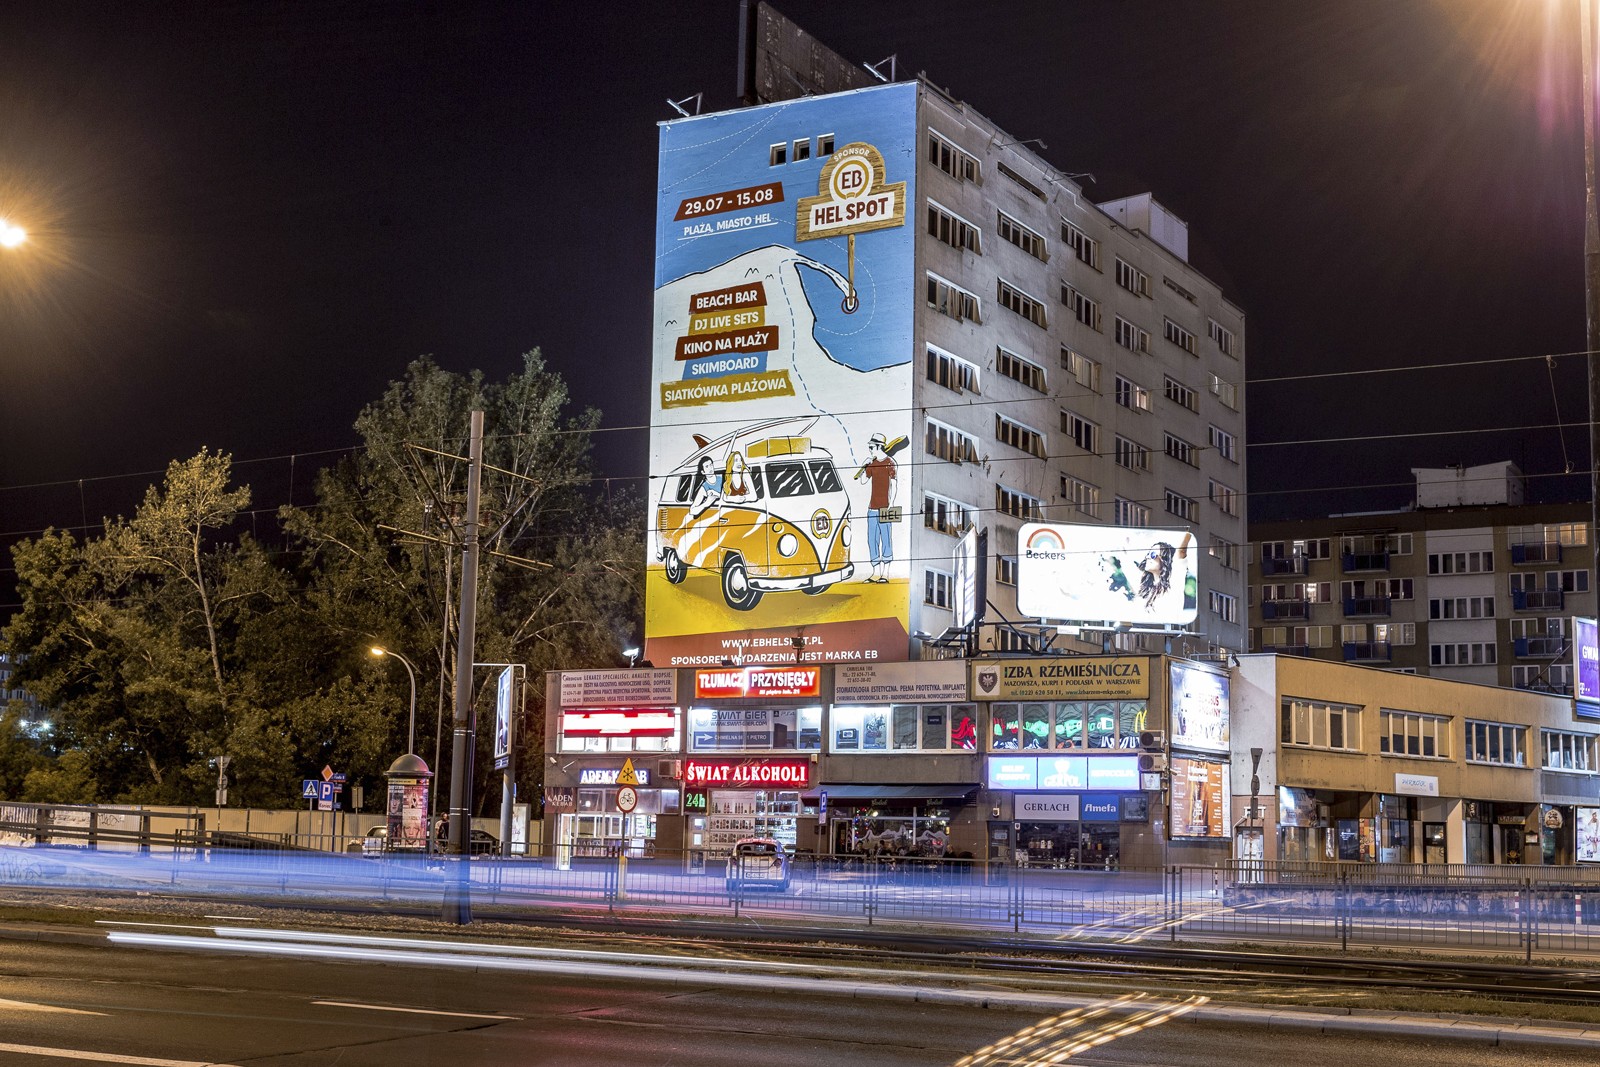 Ansicht auf Chmielna Straße nachts, mit einem Mural als Werbung von EB Hel Spot mit dem Auftritt von De La Soul, Hercules & Love Affair | EB Hel Spot | Portfolio